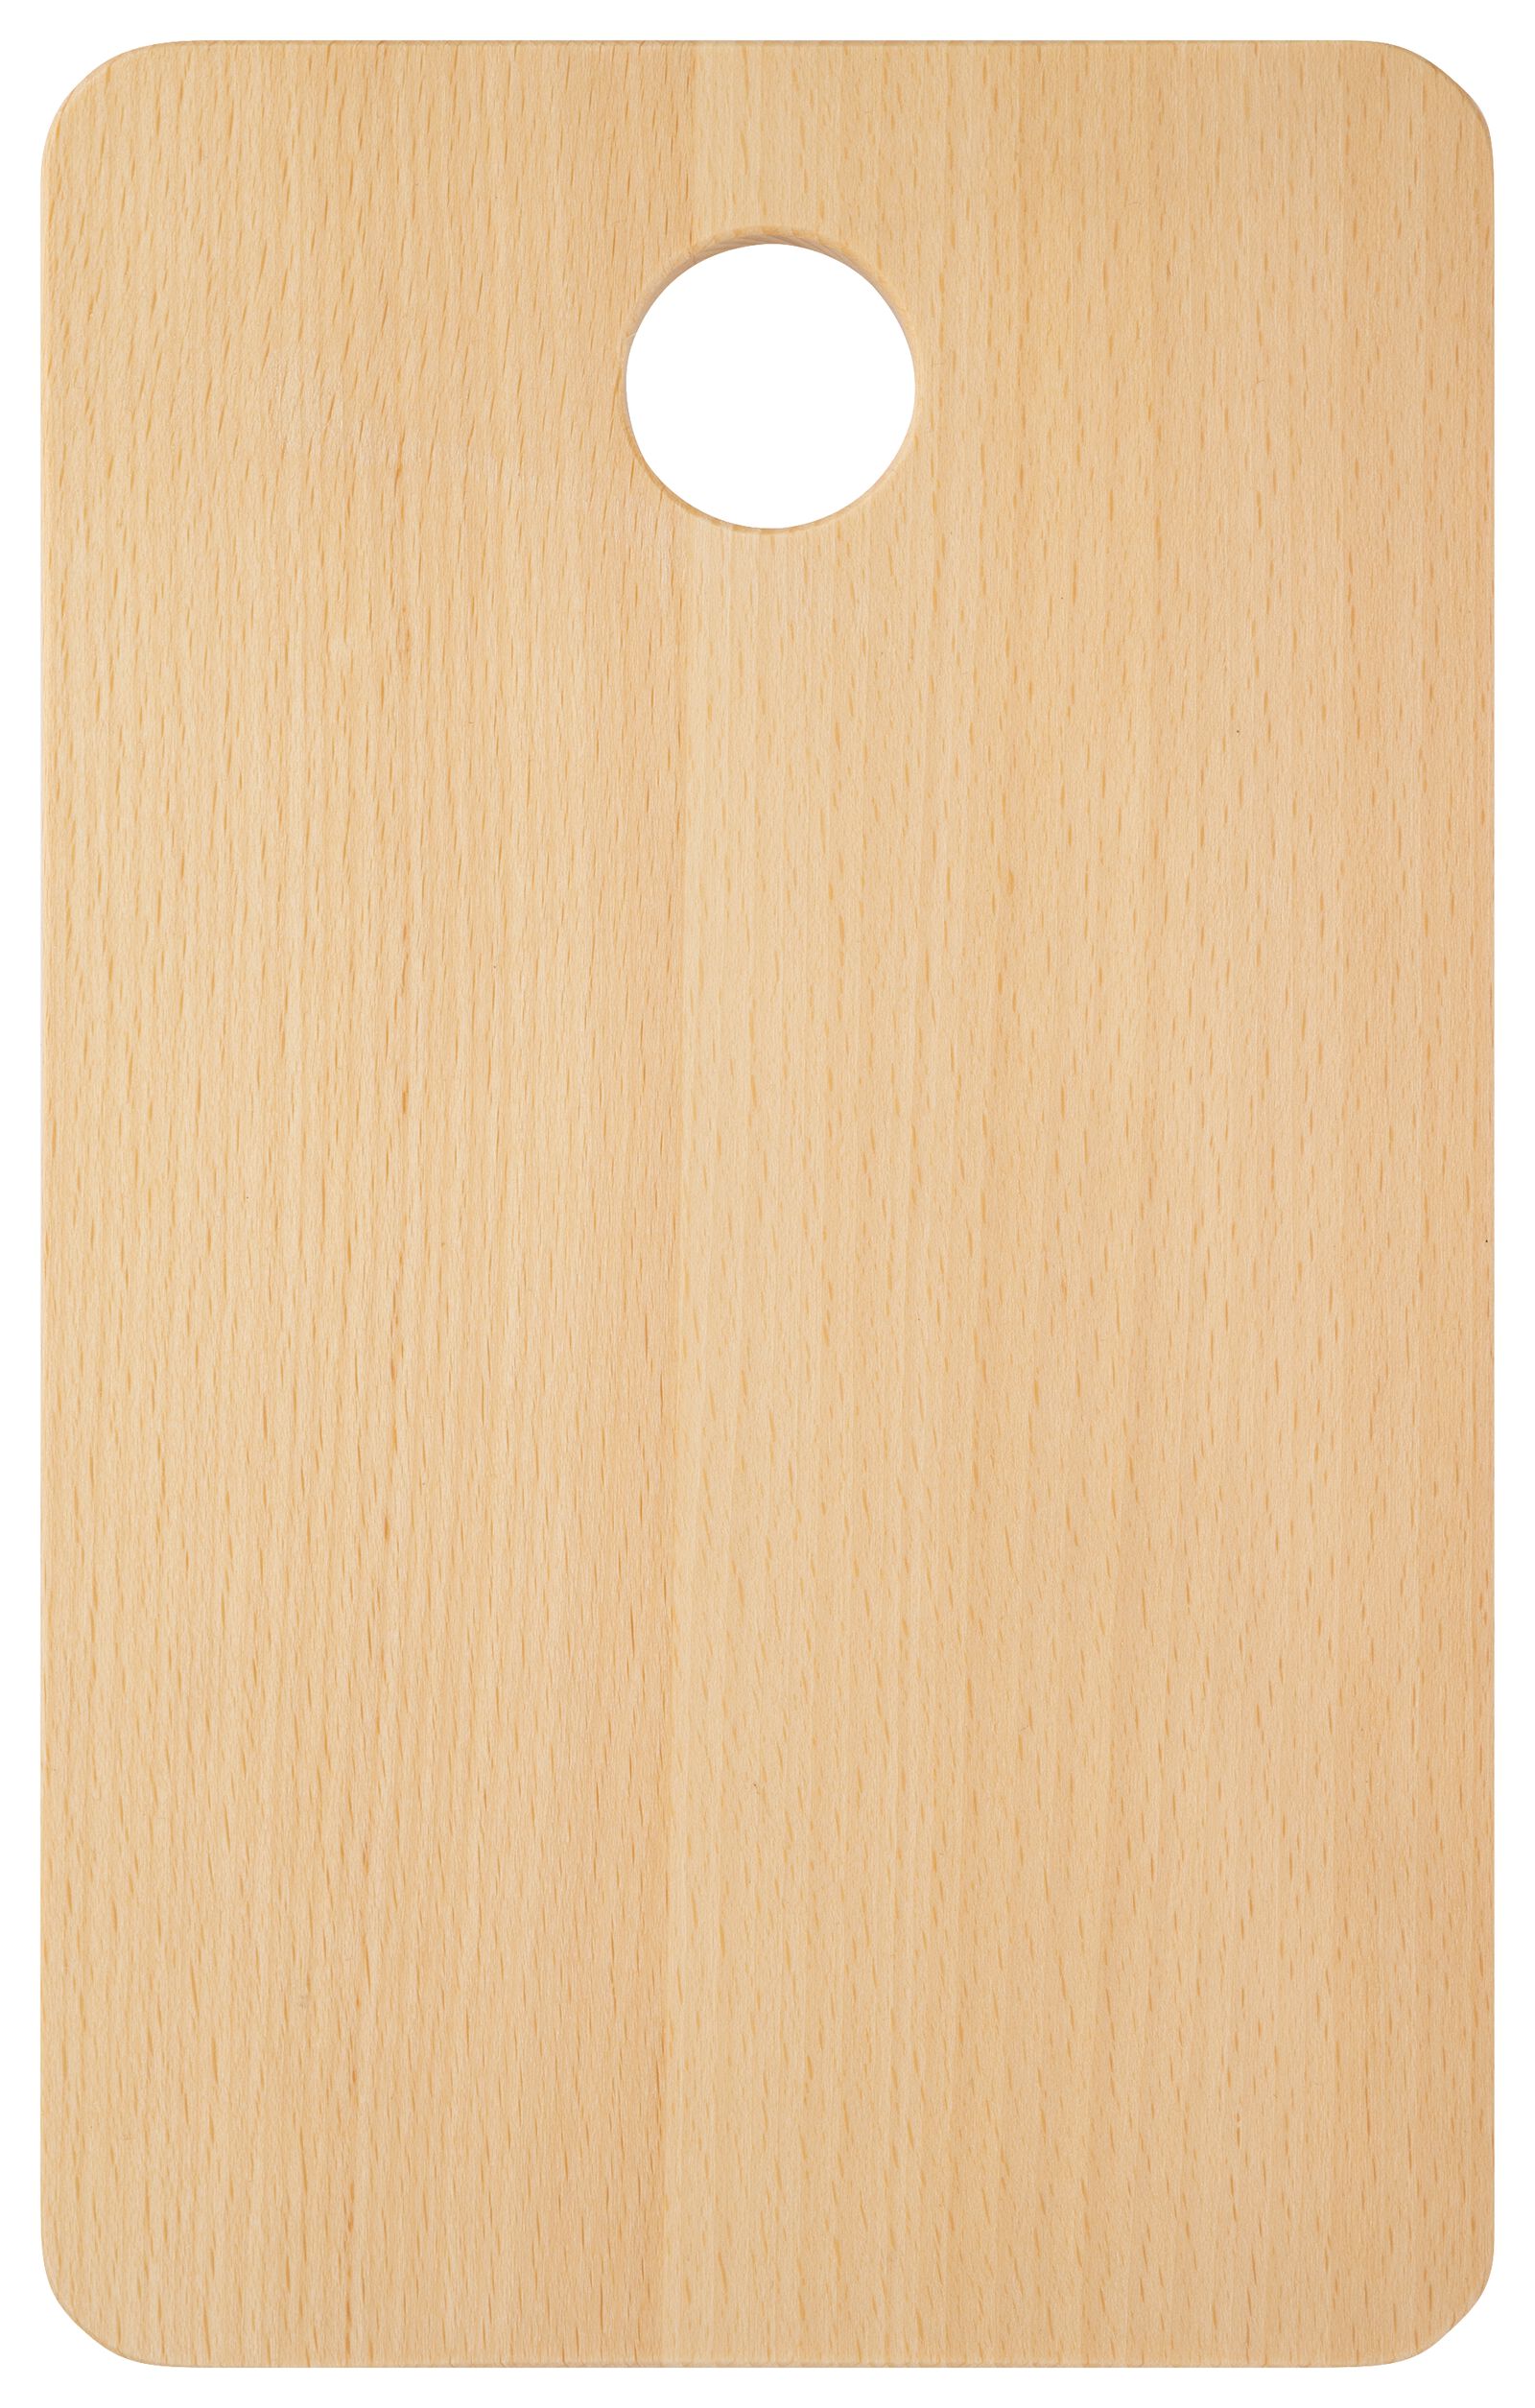 hema planche à découper 16x24x1 bois de hêtre (bois)